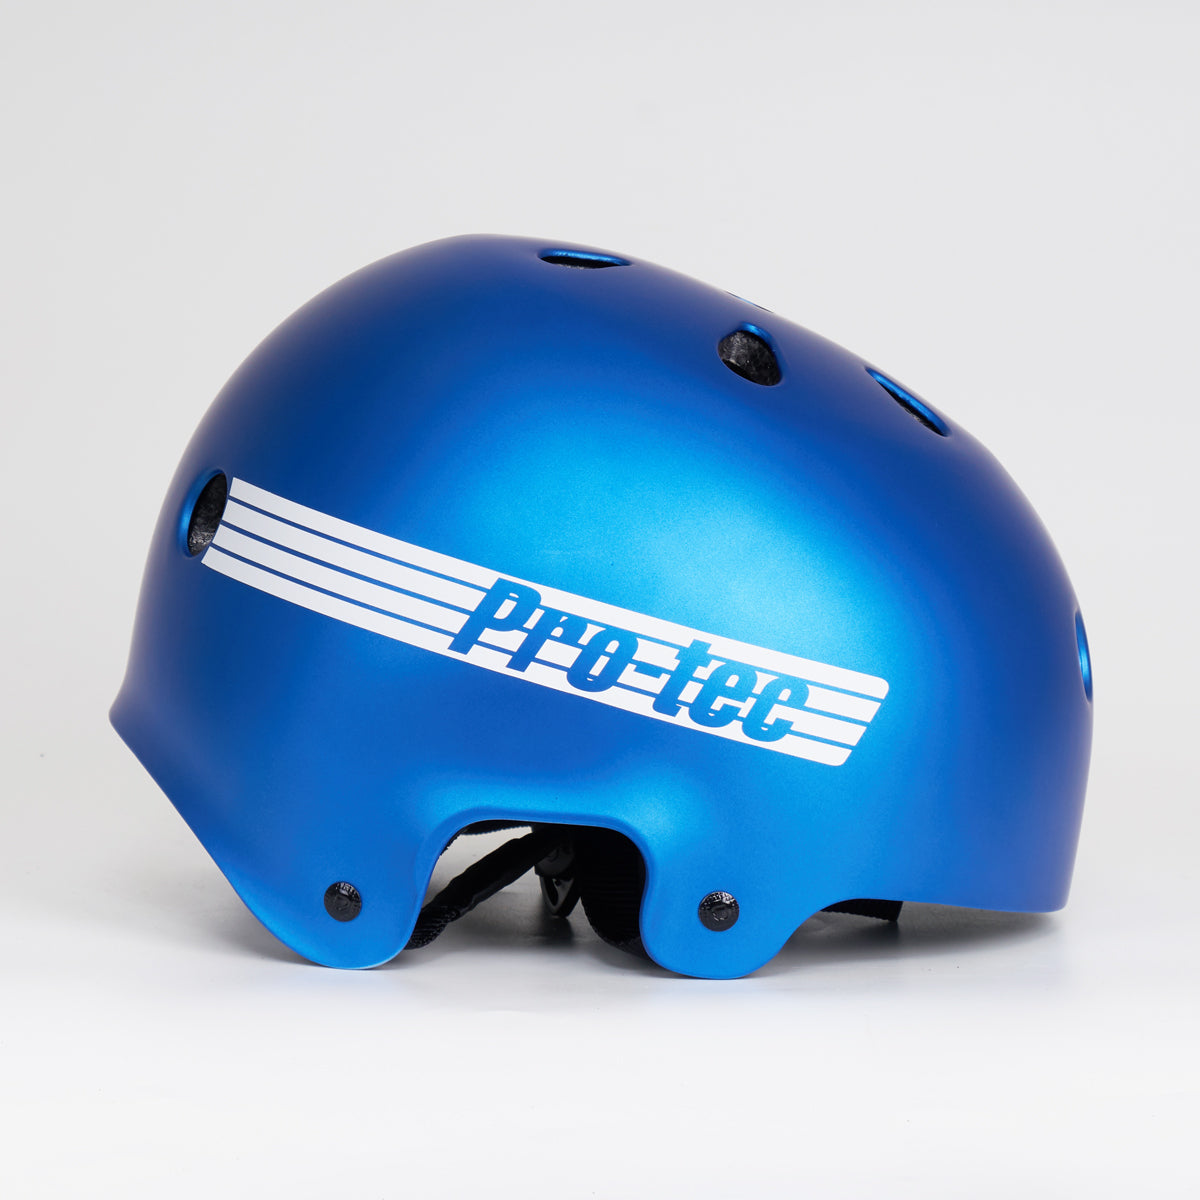 Pro Tec Old School Cert - Metalic Blue Helmet